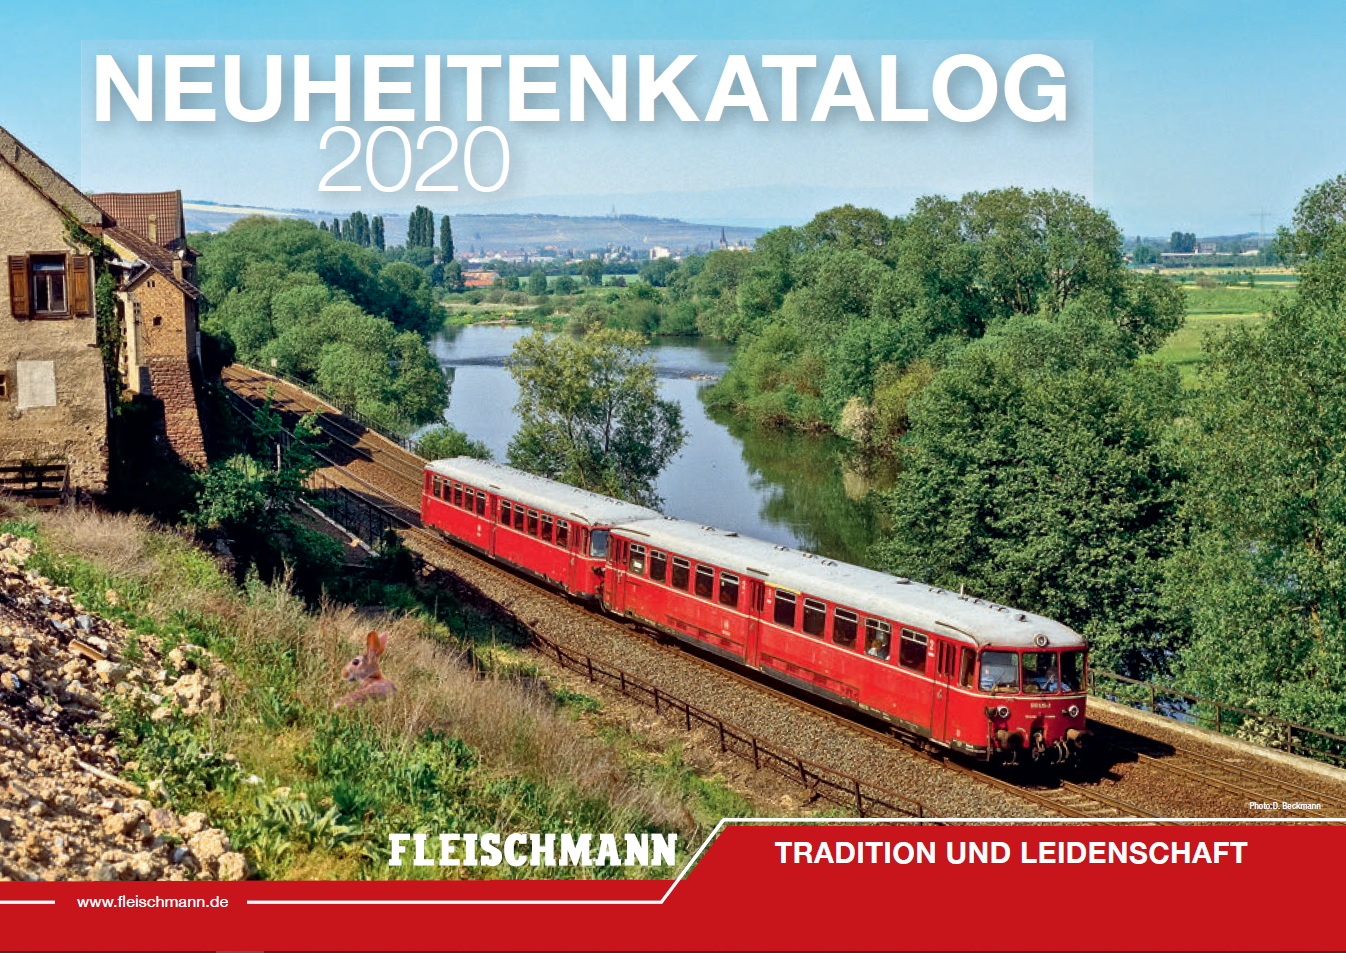 Fleischmann 2020